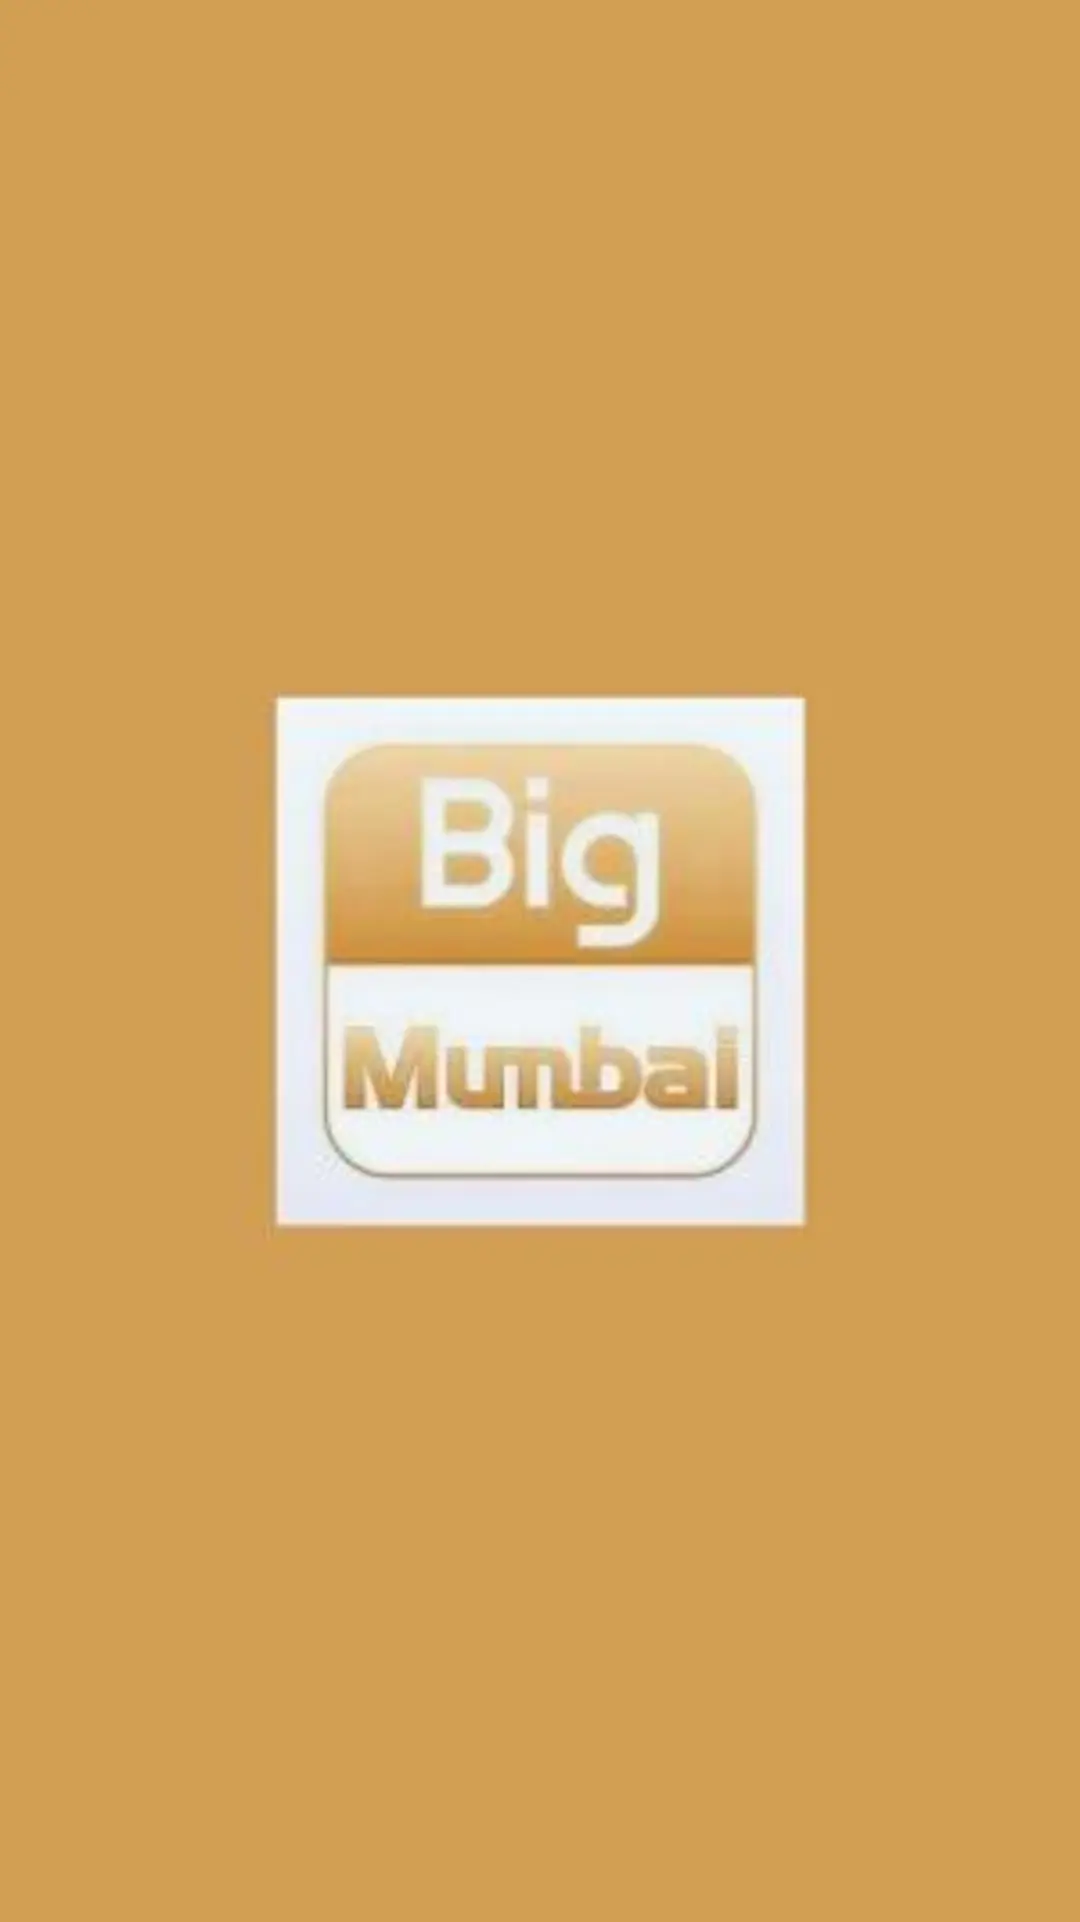 Big Mumbai Mod APK Download